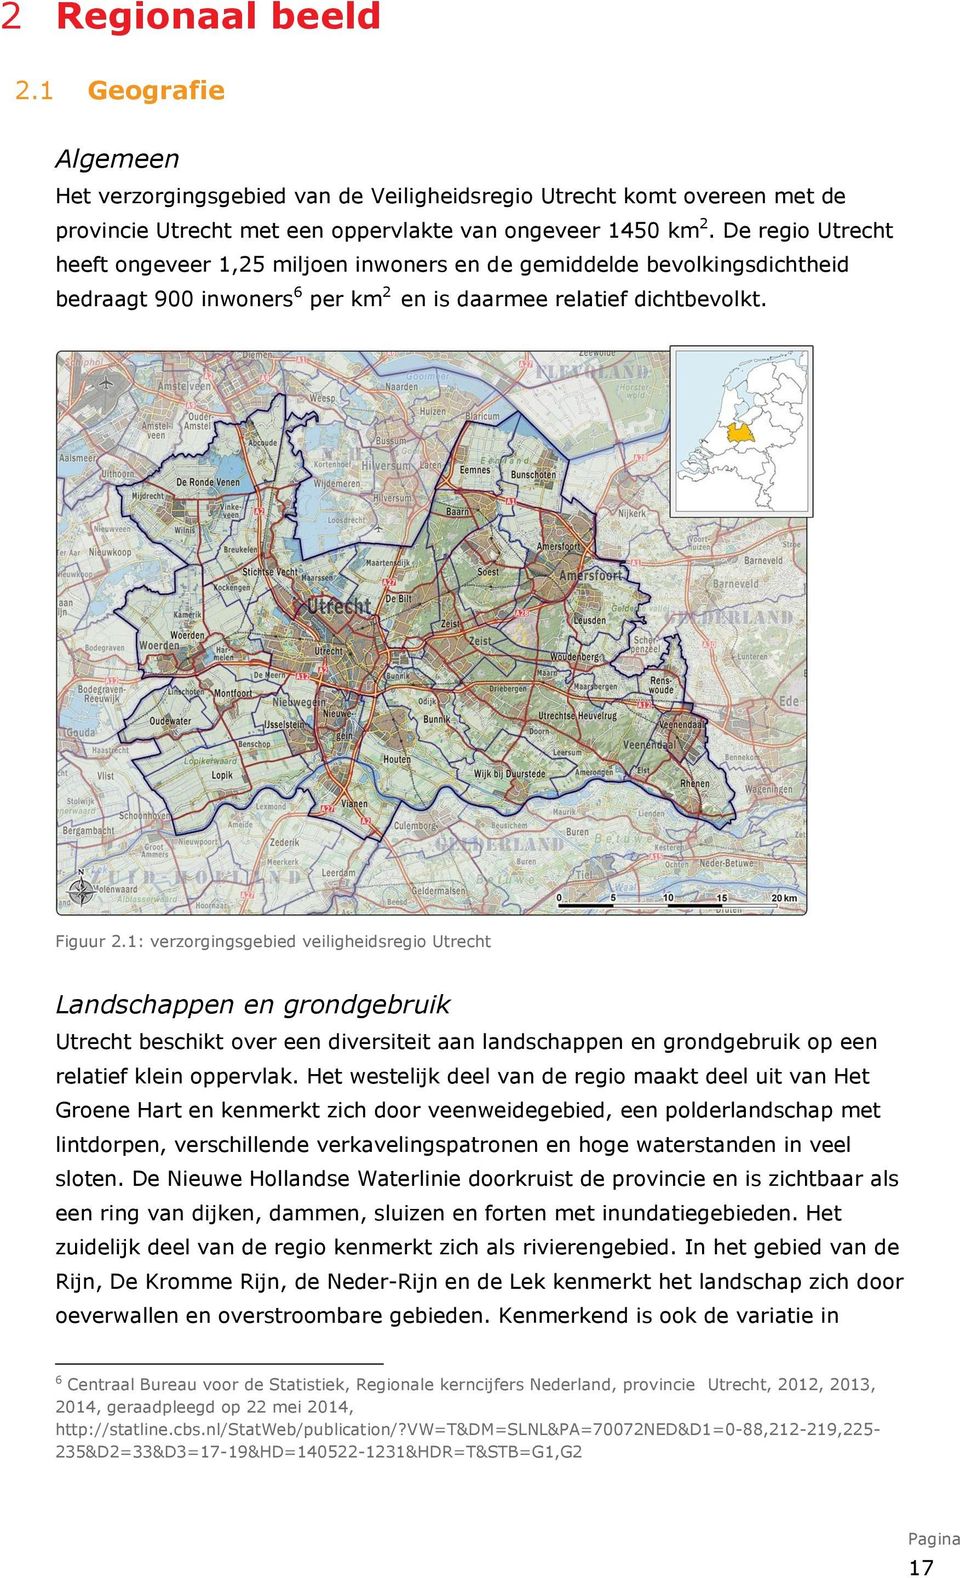 1: verzorgingsgebied veiligheidsregio Utrecht Landschappen en grondgebruik Utrecht beschikt over een diversiteit aan landschappen en grondgebruik op een relatief klein oppervlak.